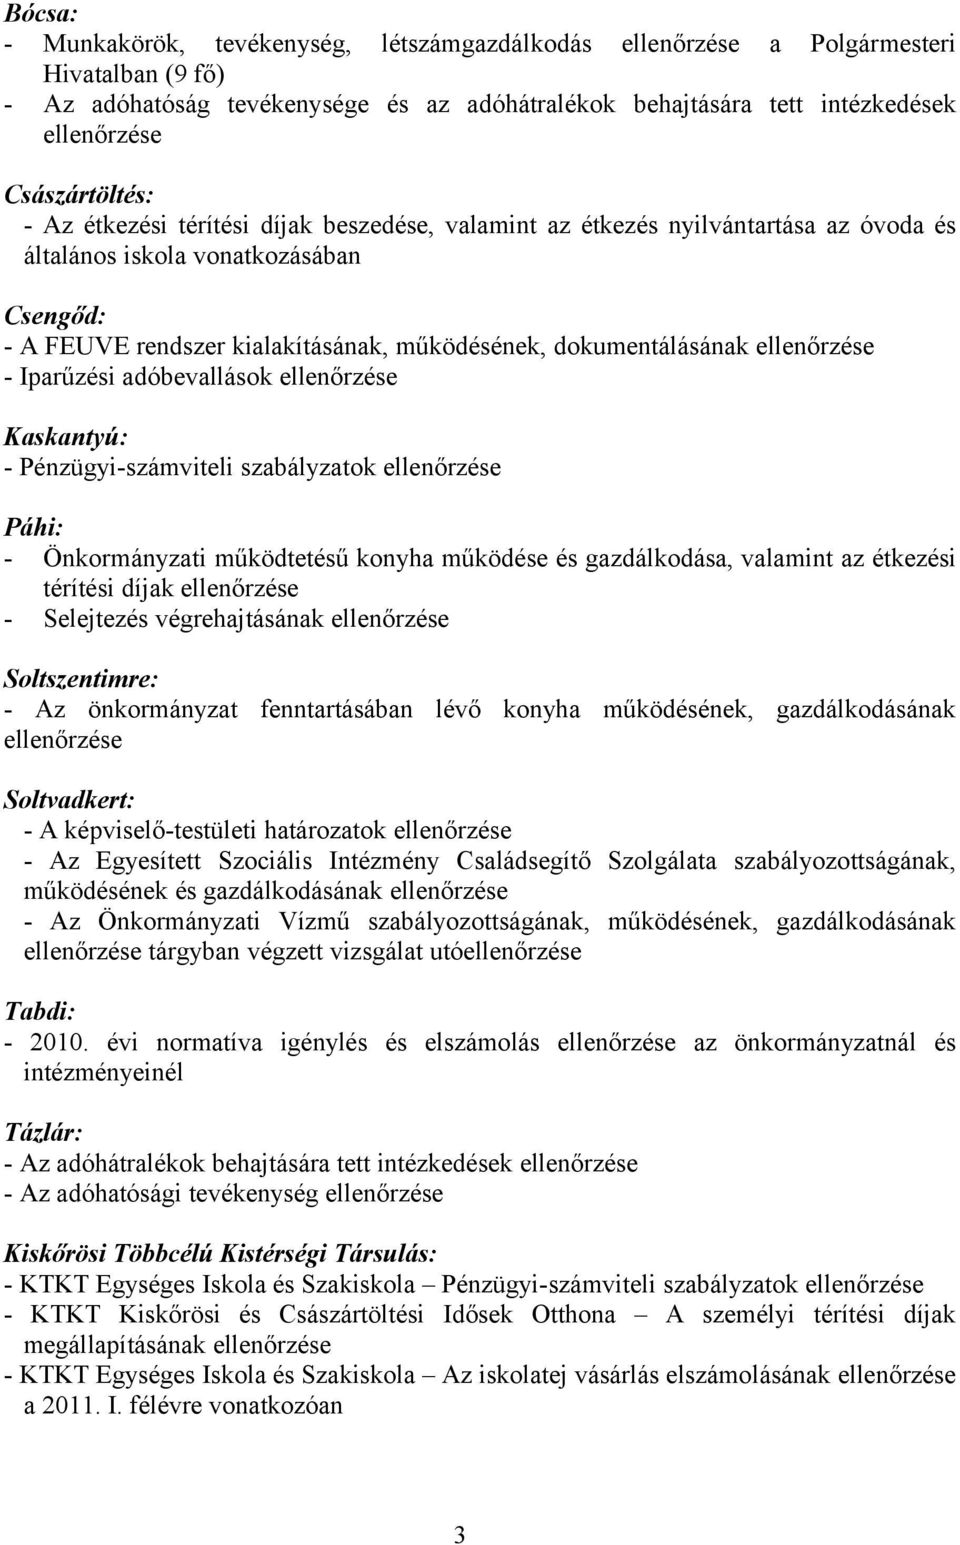 dokumentálásának ellenőrzése - Iparűzési adóbevallások ellenőrzése Kaskantyú: - Pénzügyi-számviteli szabályzatok ellenőrzése Páhi: - Önkormányzati működtetésű konyha működése és gazdálkodása,